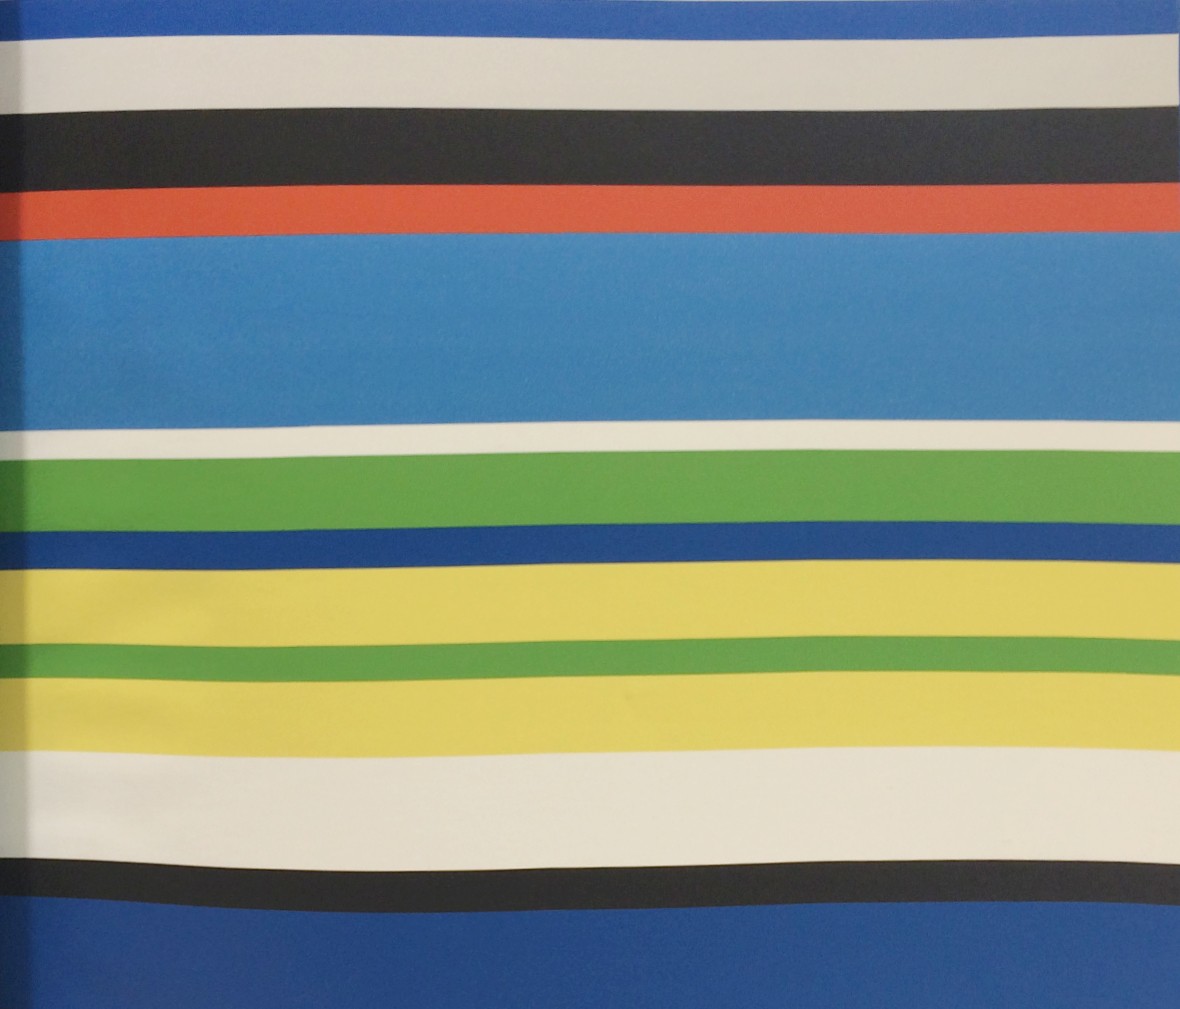 格莱美壁纸 梦想乐园系列 KJ51612型号 进口环保纯纸墙纸 单品展示